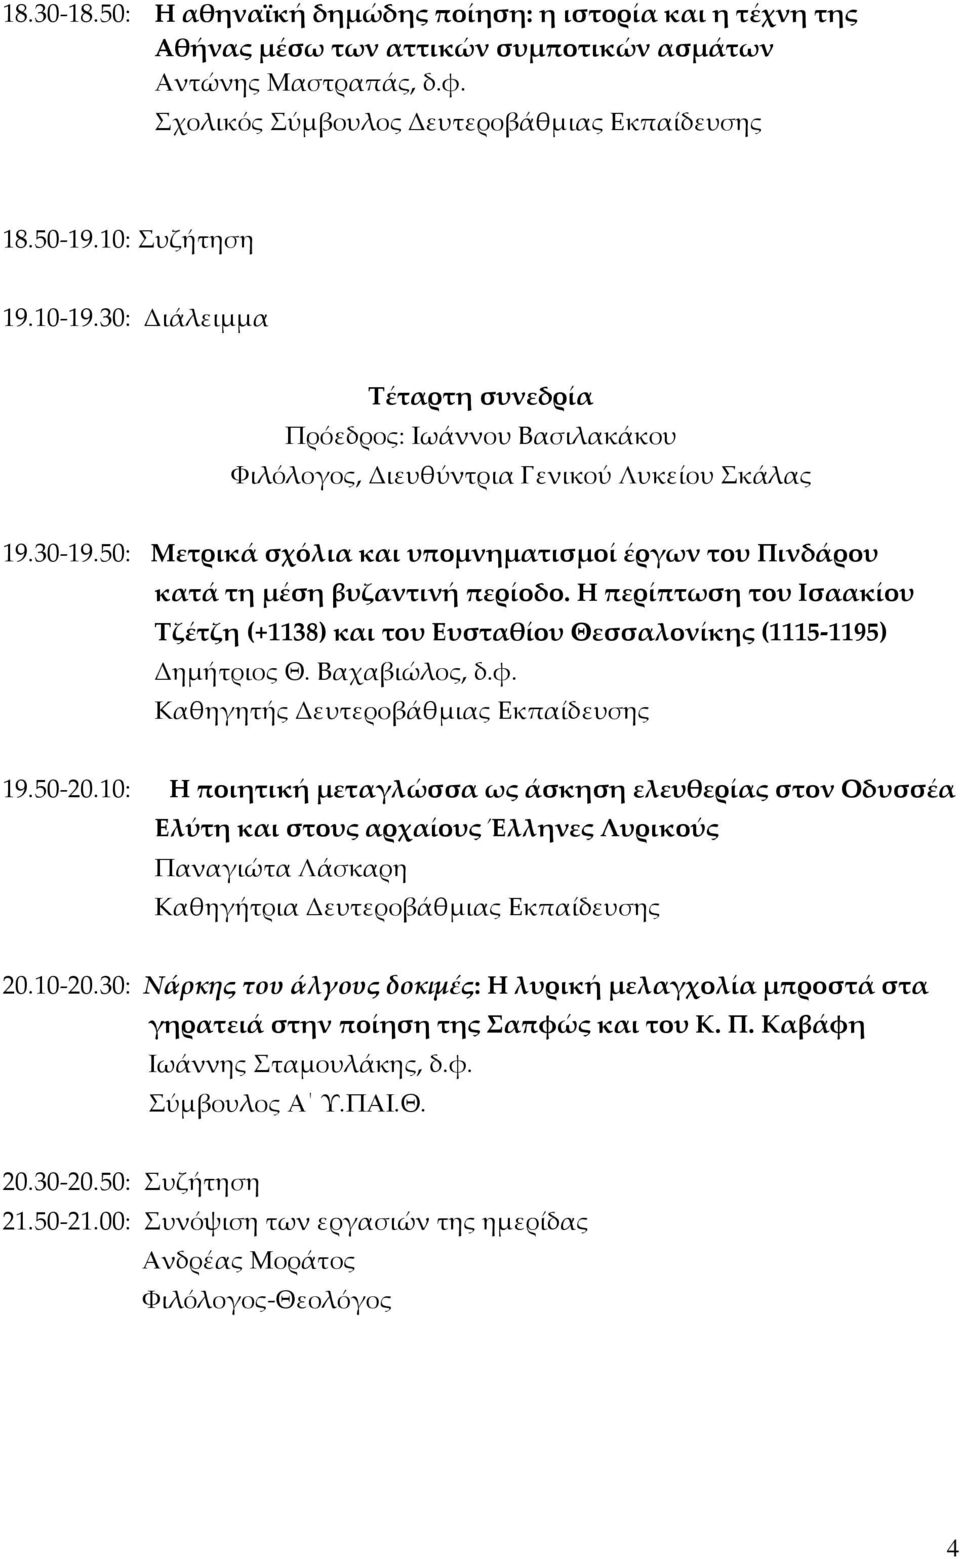 50: Μετρικά σχόλια και υπομνηματισμοί έργων του Πινδάρου κατά τη μέση βυζαντινή περίοδο. Η περίπτωση του Ισαακίου Τζέτζη (+1138) και του Ευσταθίου Θεσσαλονίκης (1115-1195) Δημήτριος Θ. Βαχαβιώλος, δ.